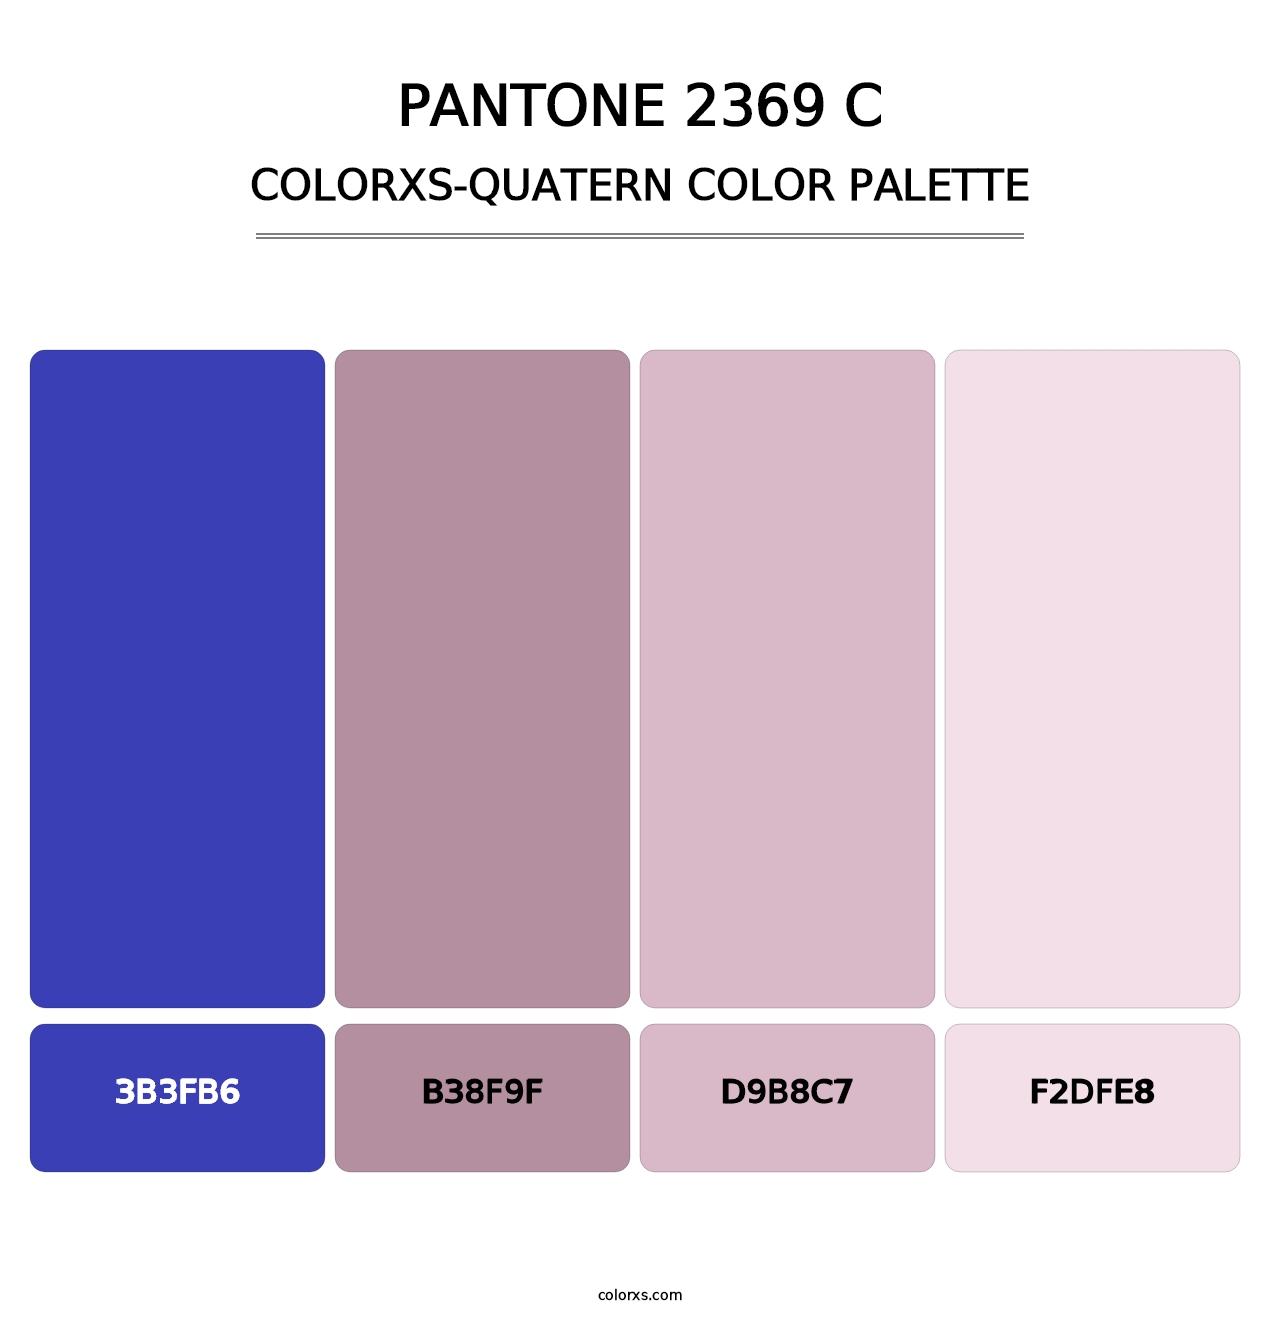 PANTONE 2369 C - Colorxs Quatern Palette